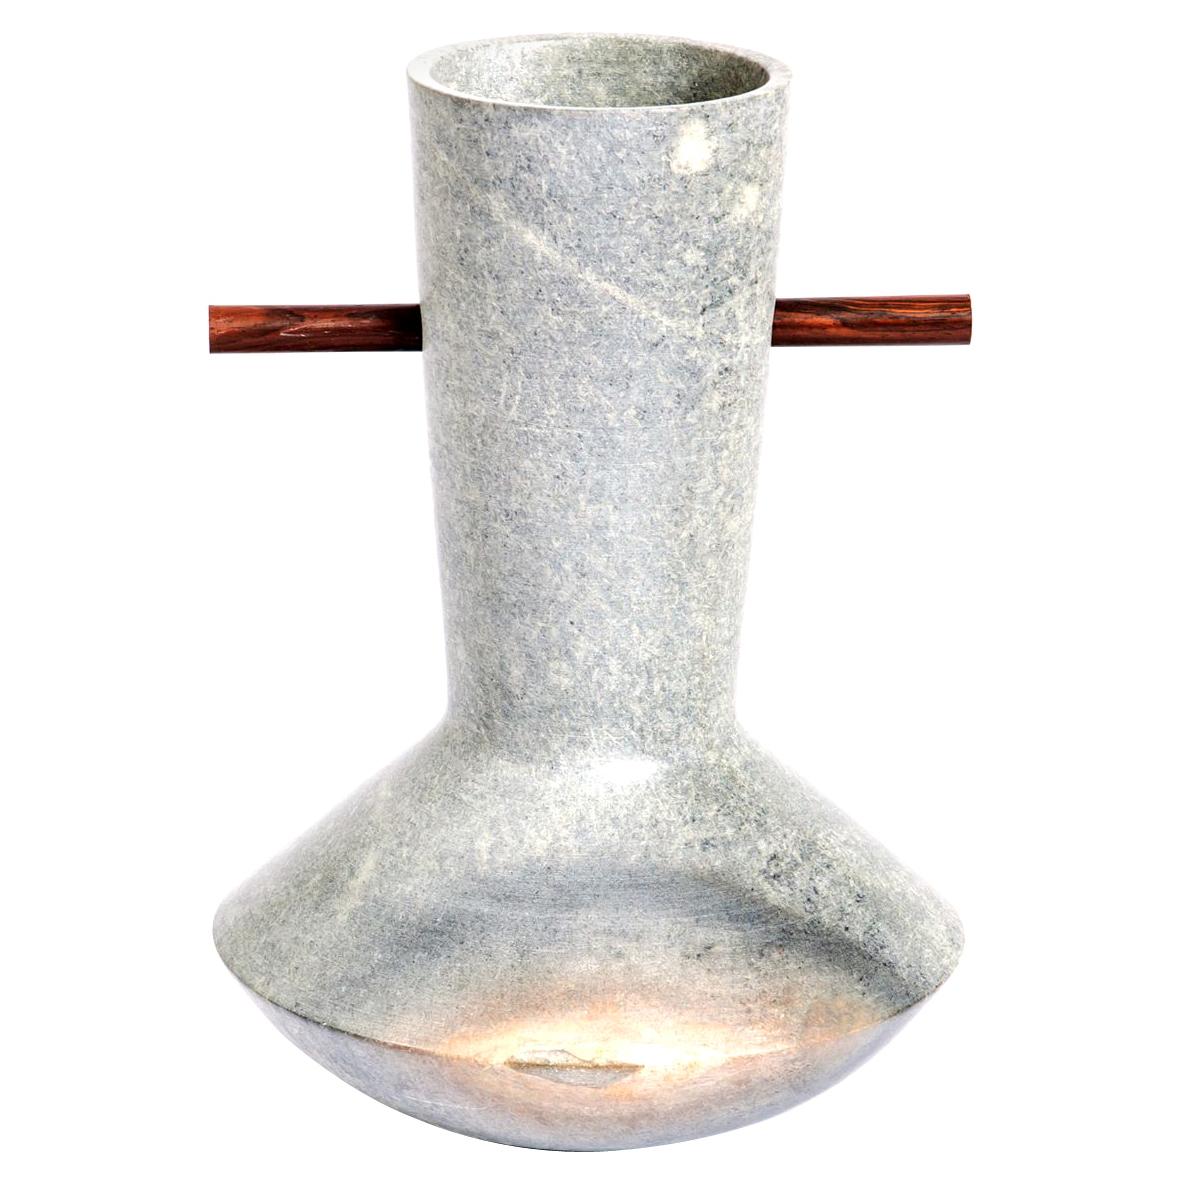 Ita 3, Soapstone Vase by Alva Design